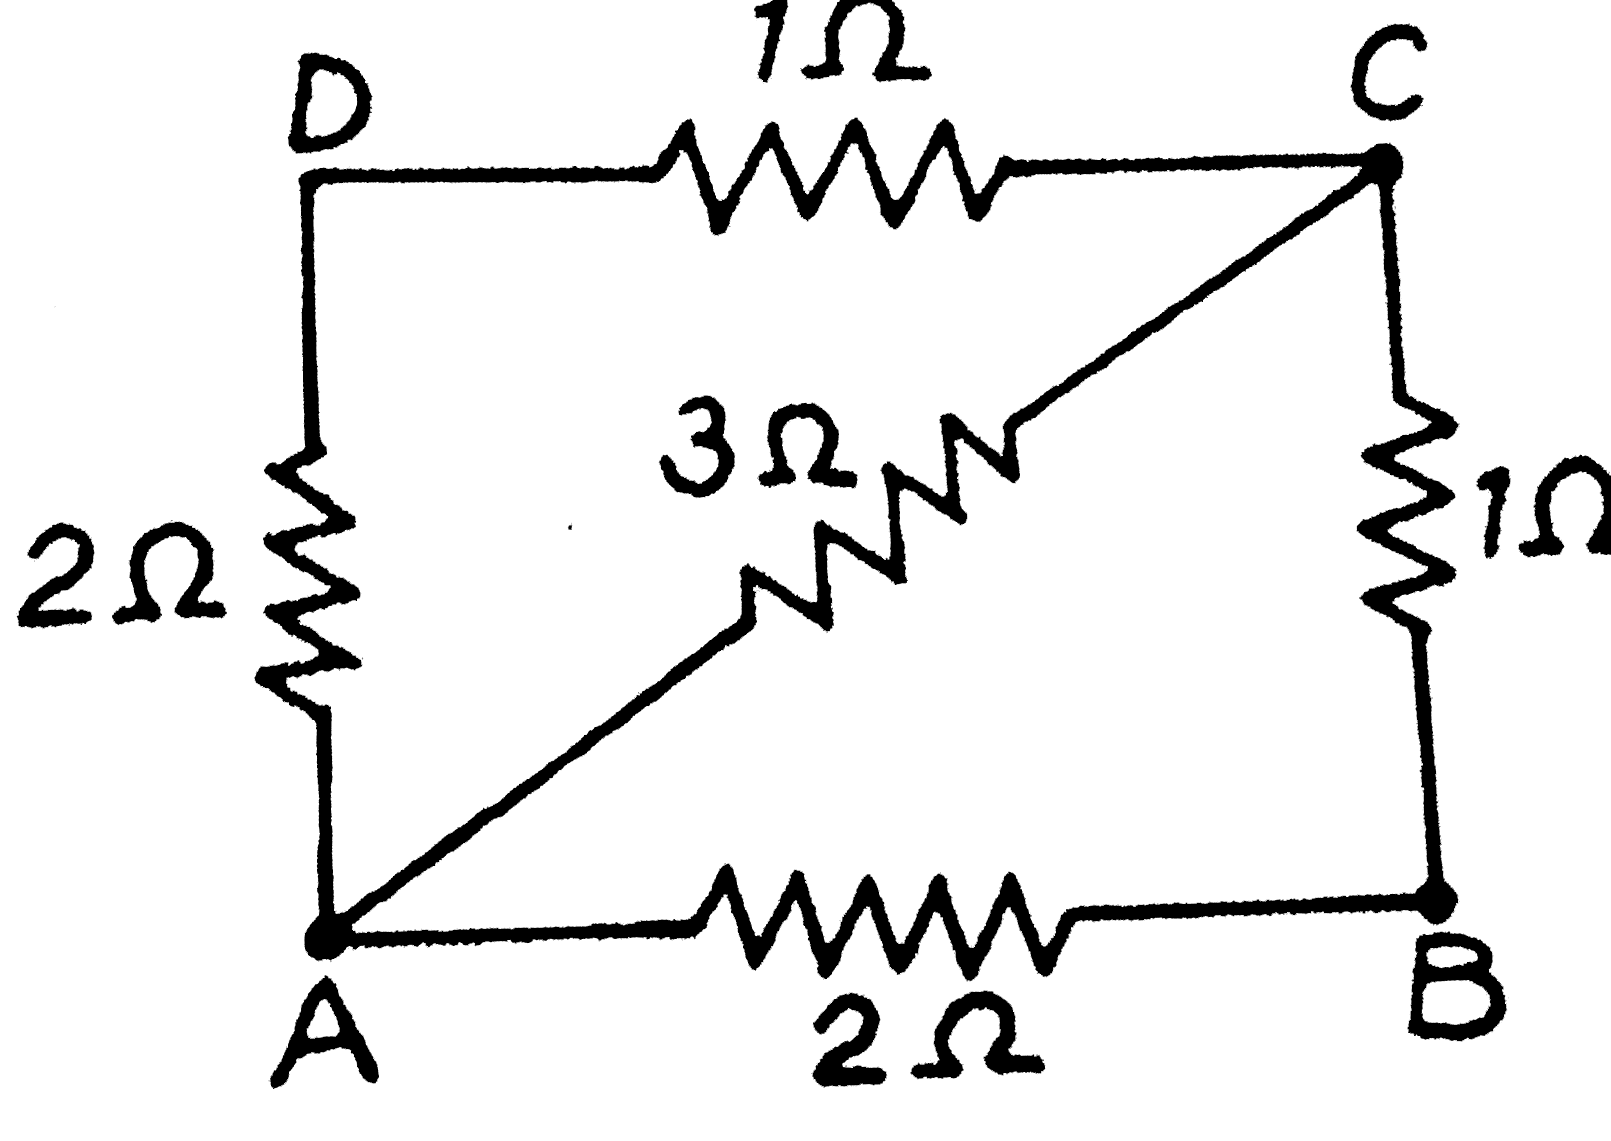 दीए गए चित्र  में  बिंदुओं (i)  A  व  B  तथा (ii)  A  व C  के बीच  तुल्य  प्रतिरोध  ज्ञात  कीजिए ।